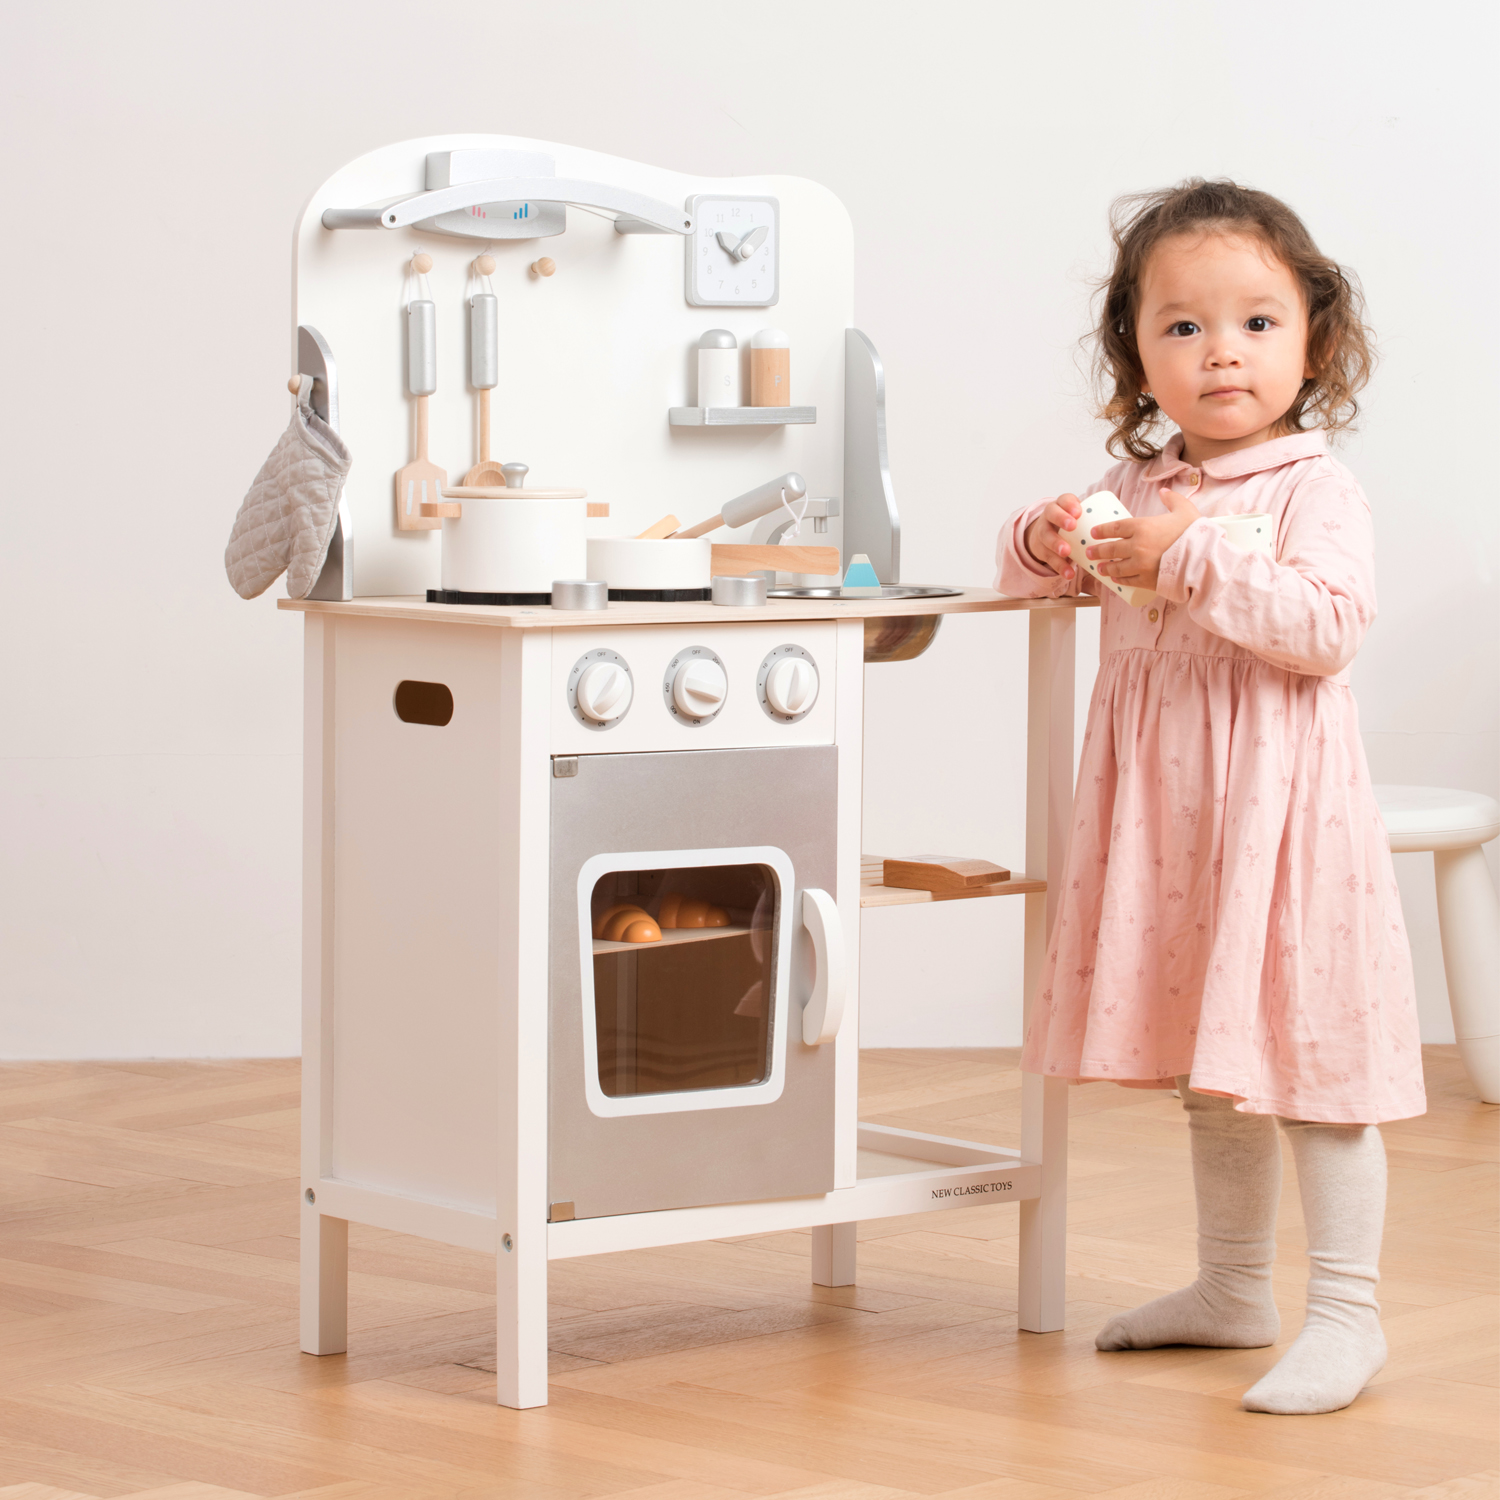 New Classic Toys Cuisine enfant Modern, plaque de cuisson bois rose